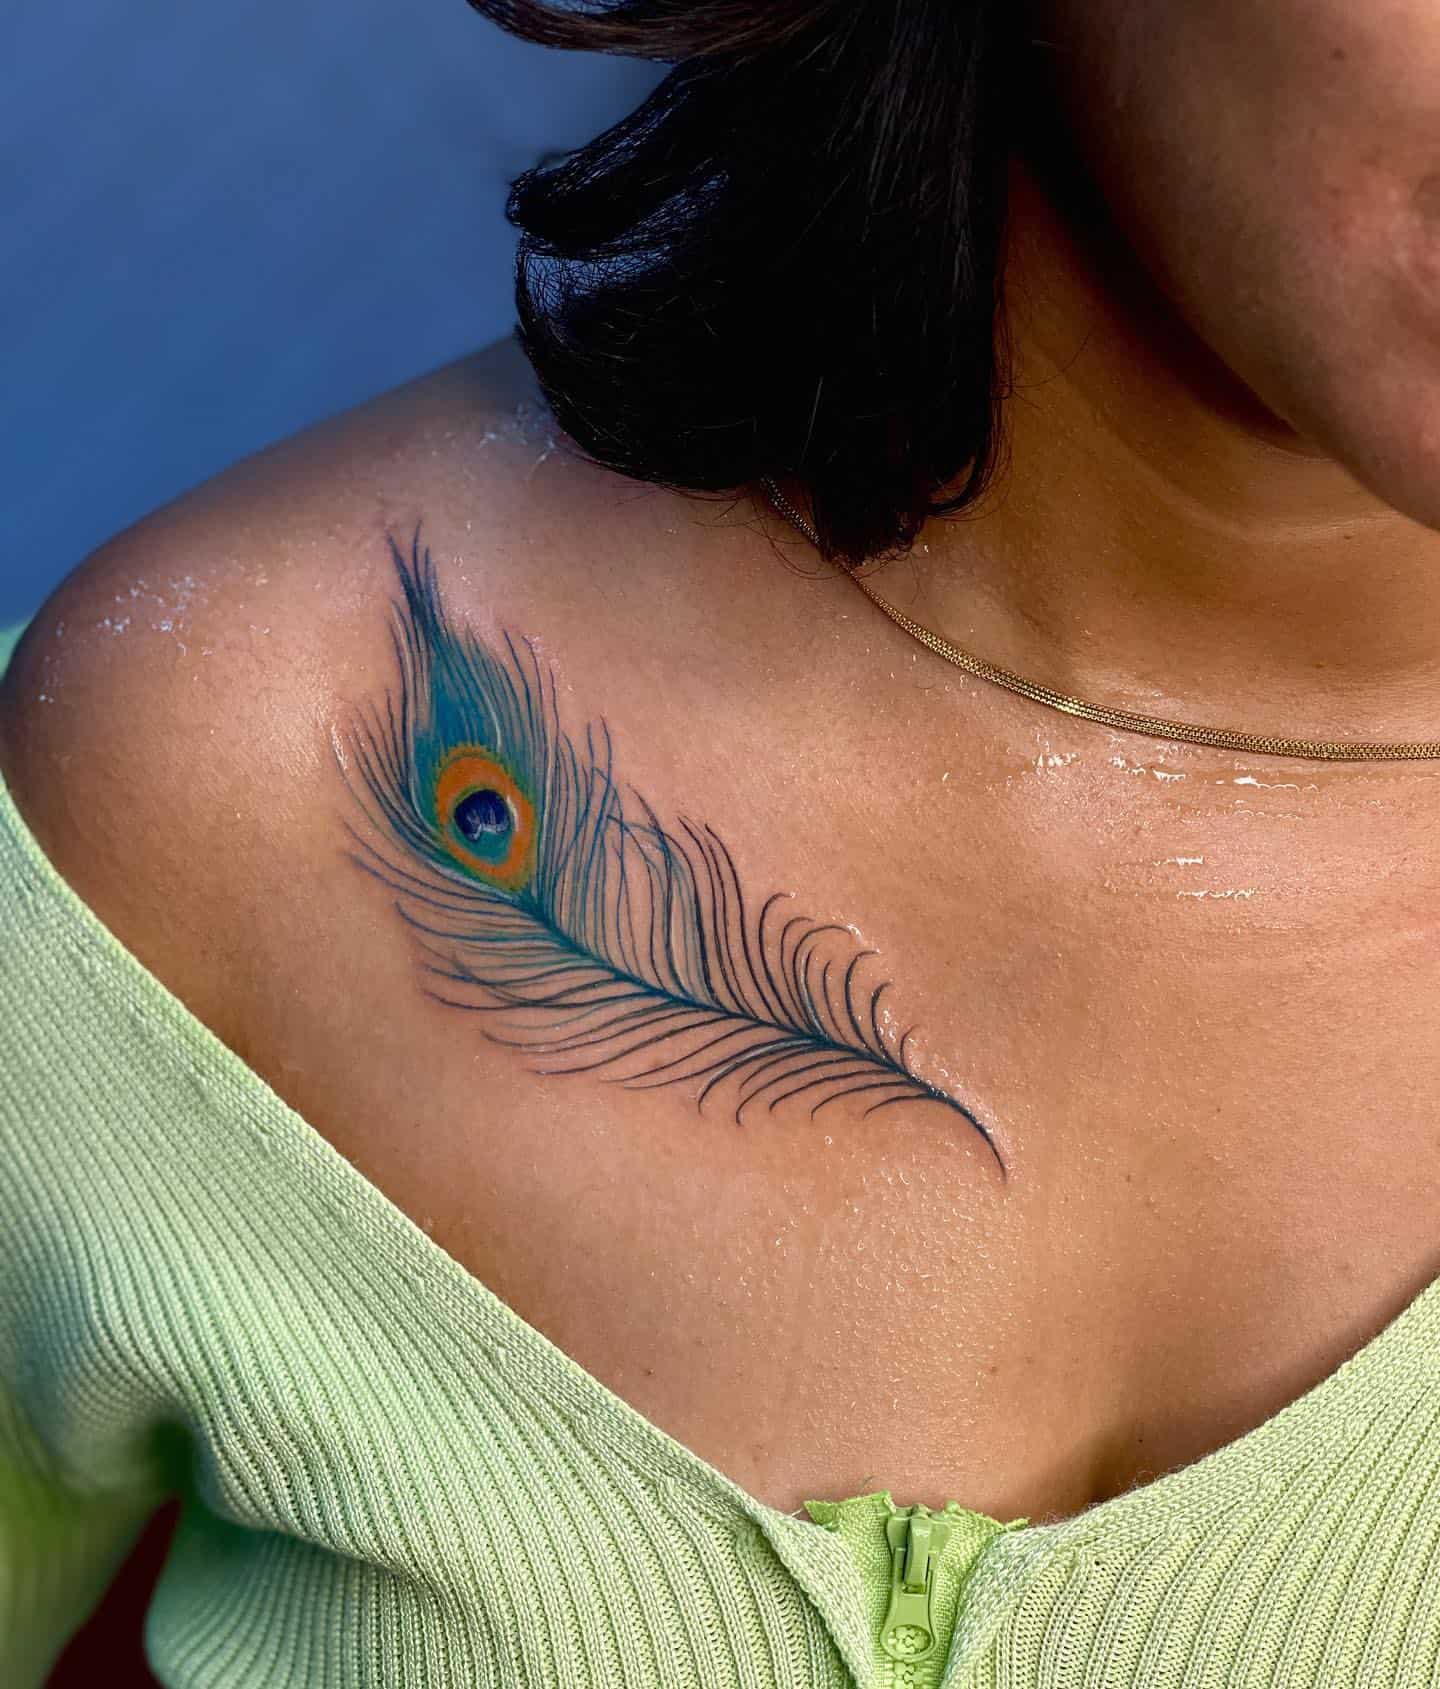 Peacock Feather Tattoo Ideas 3